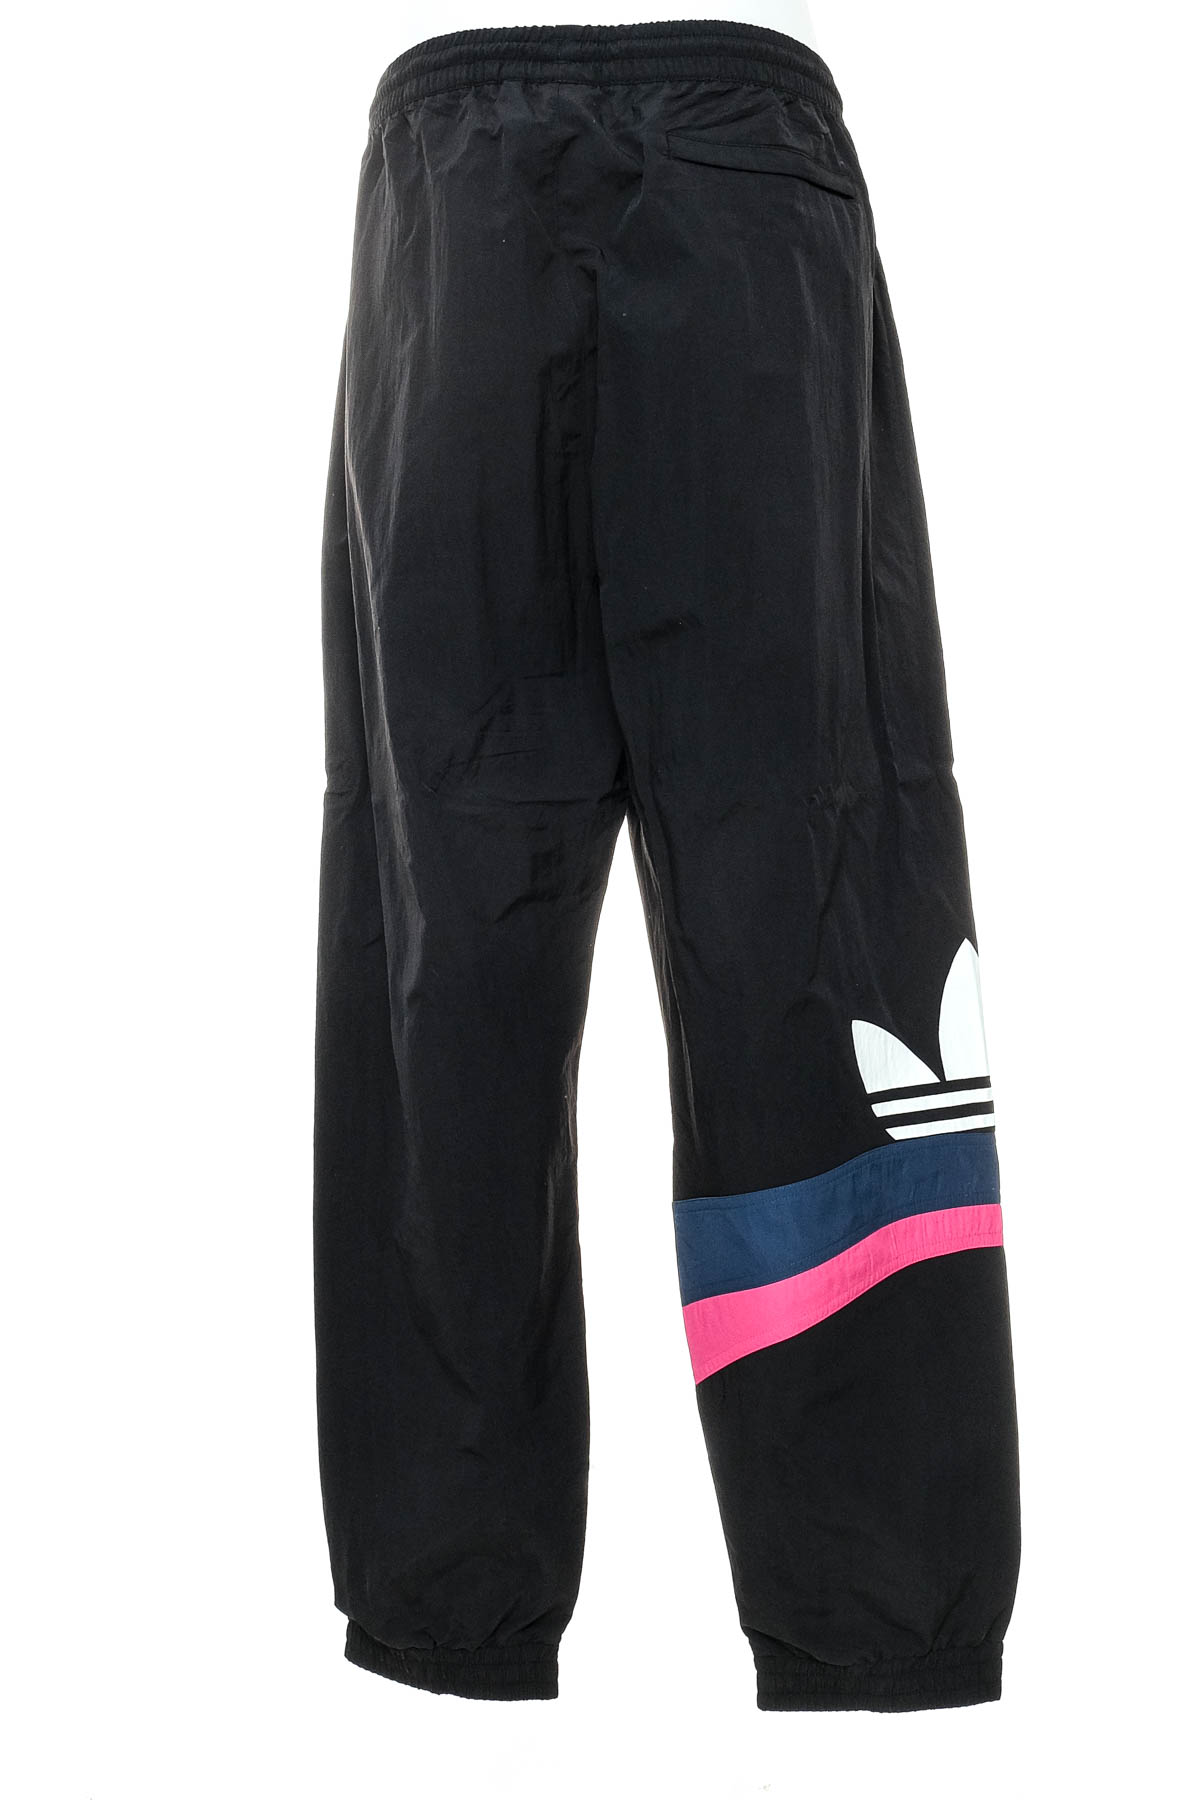 Αθλητικά παντελόνια ανδρών - Adidas - 1